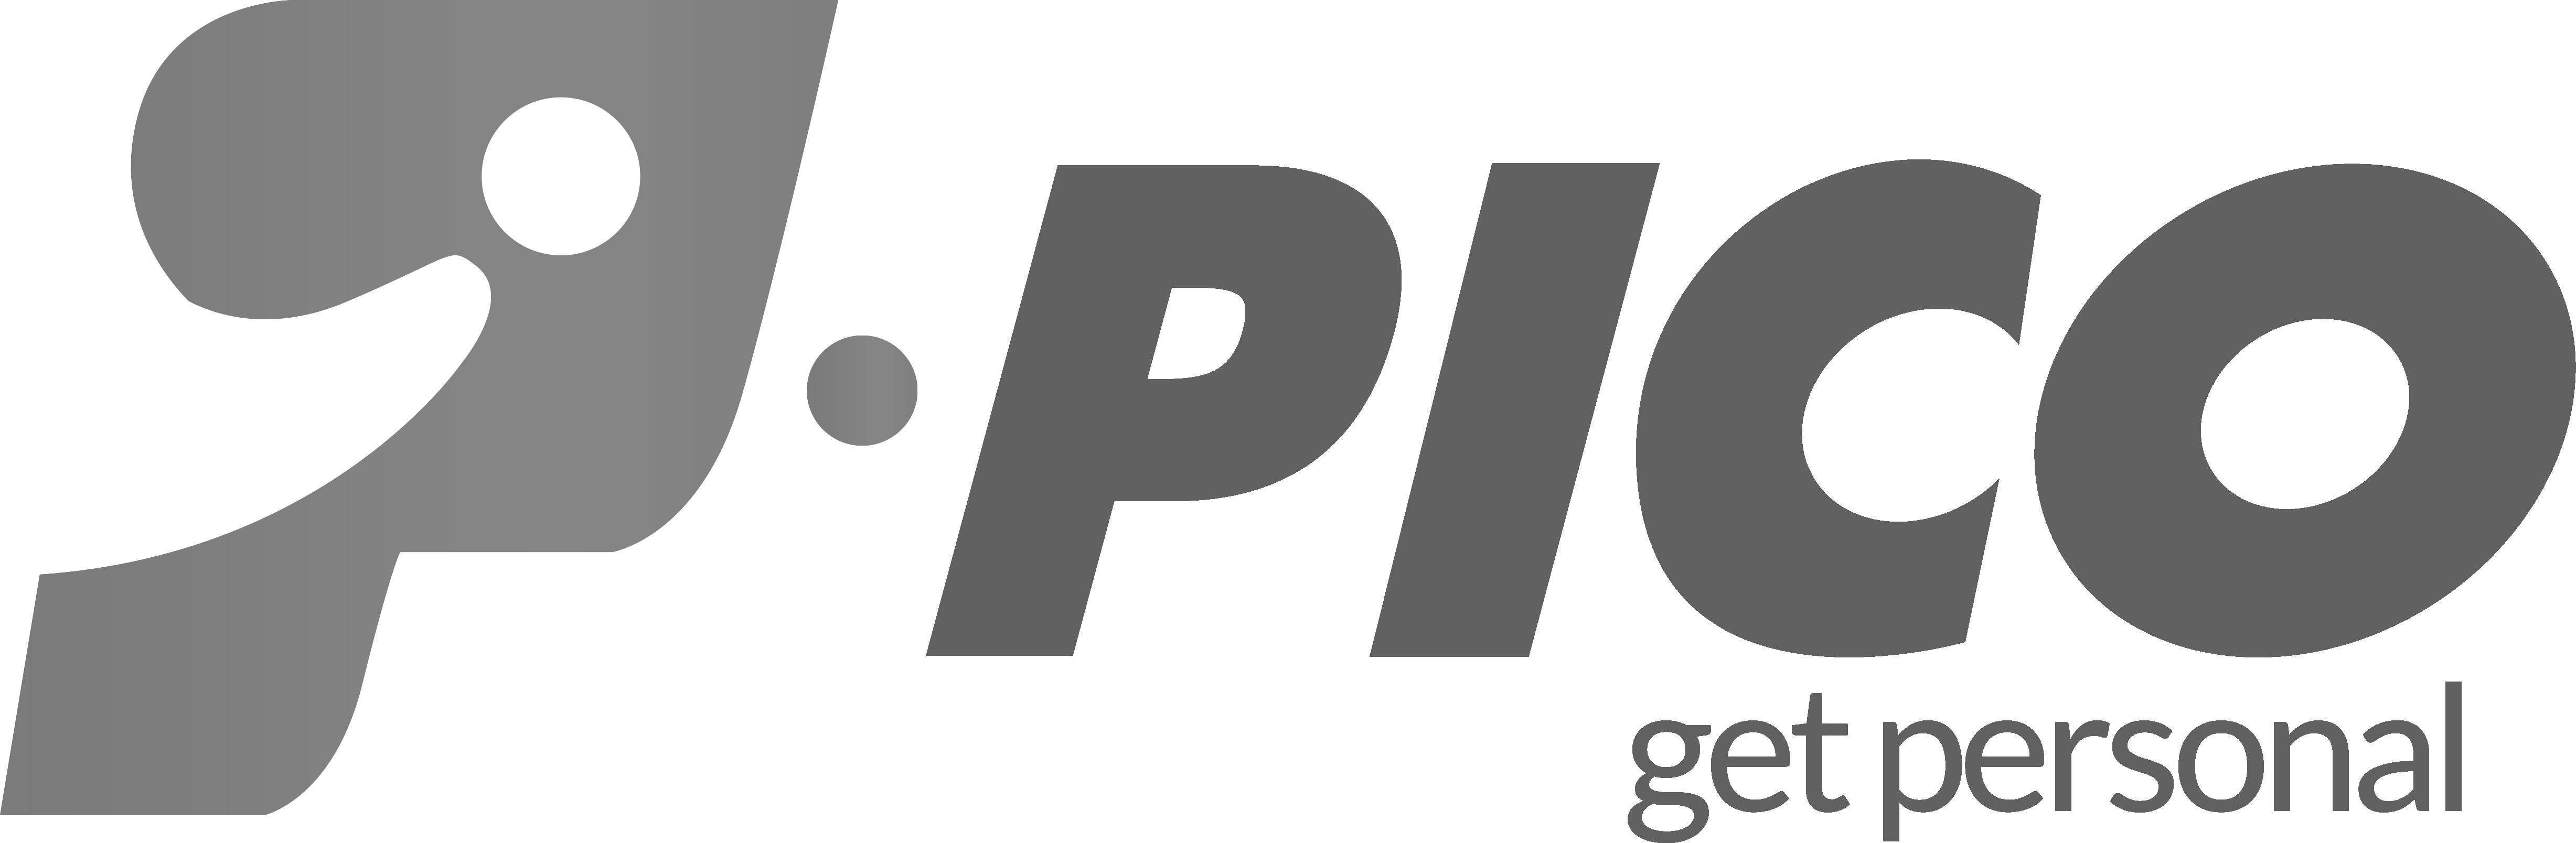 לוגו Pico